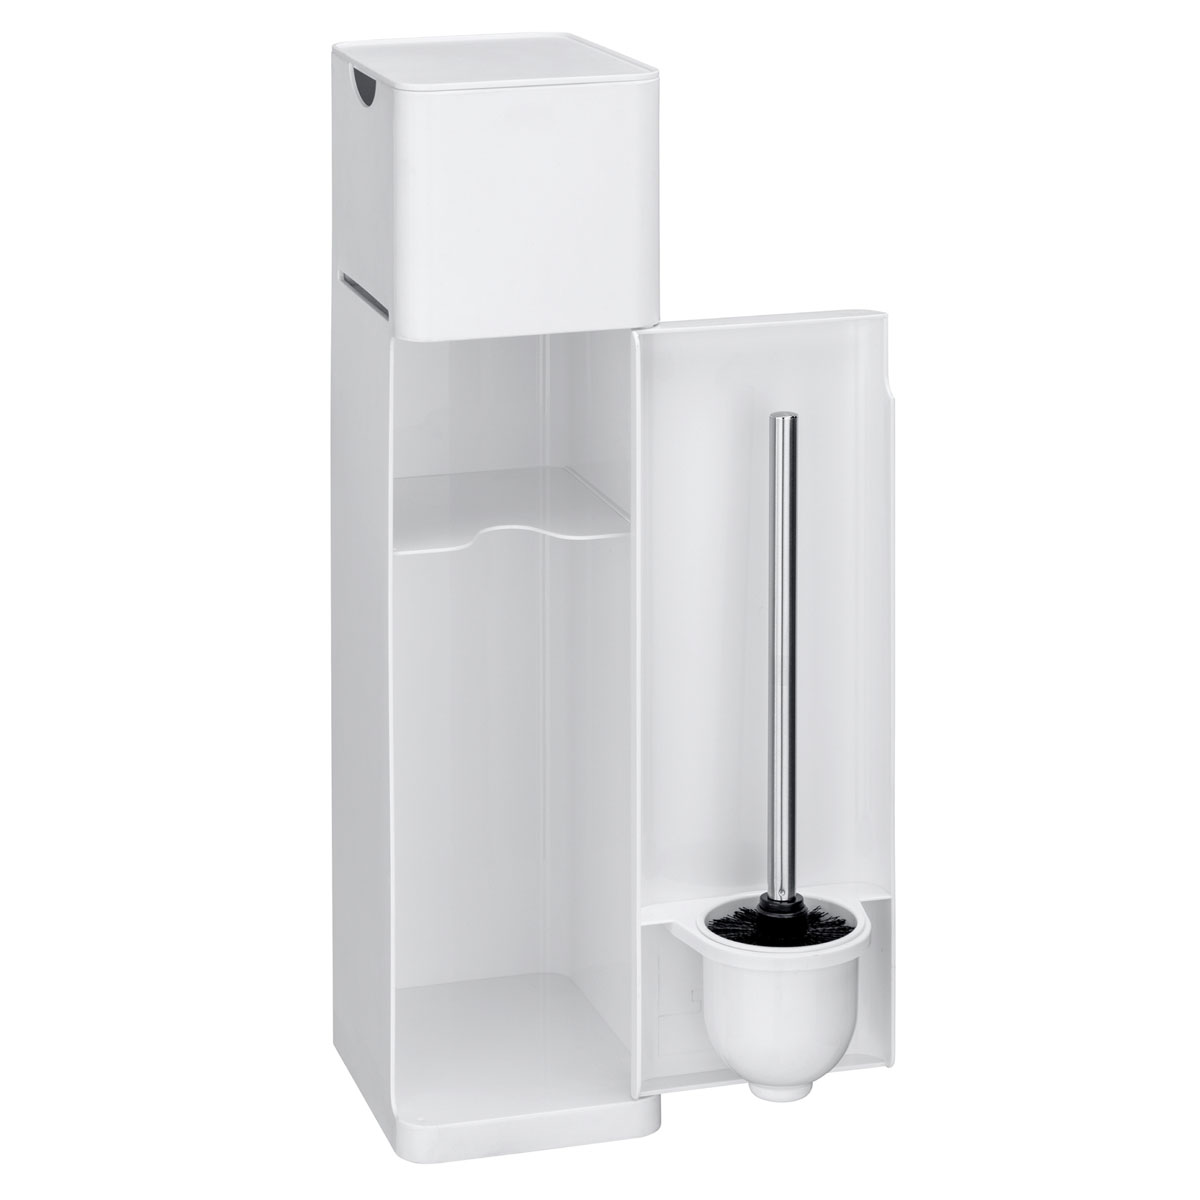 Wenko 6 in WC-Bürstenhalter und Weiß Toilettenpapierhalter matt Ablage 514825 Stauraumfächer WC-Garnitur integrierter Imon 1 Stand | Ersatzrollenhalter